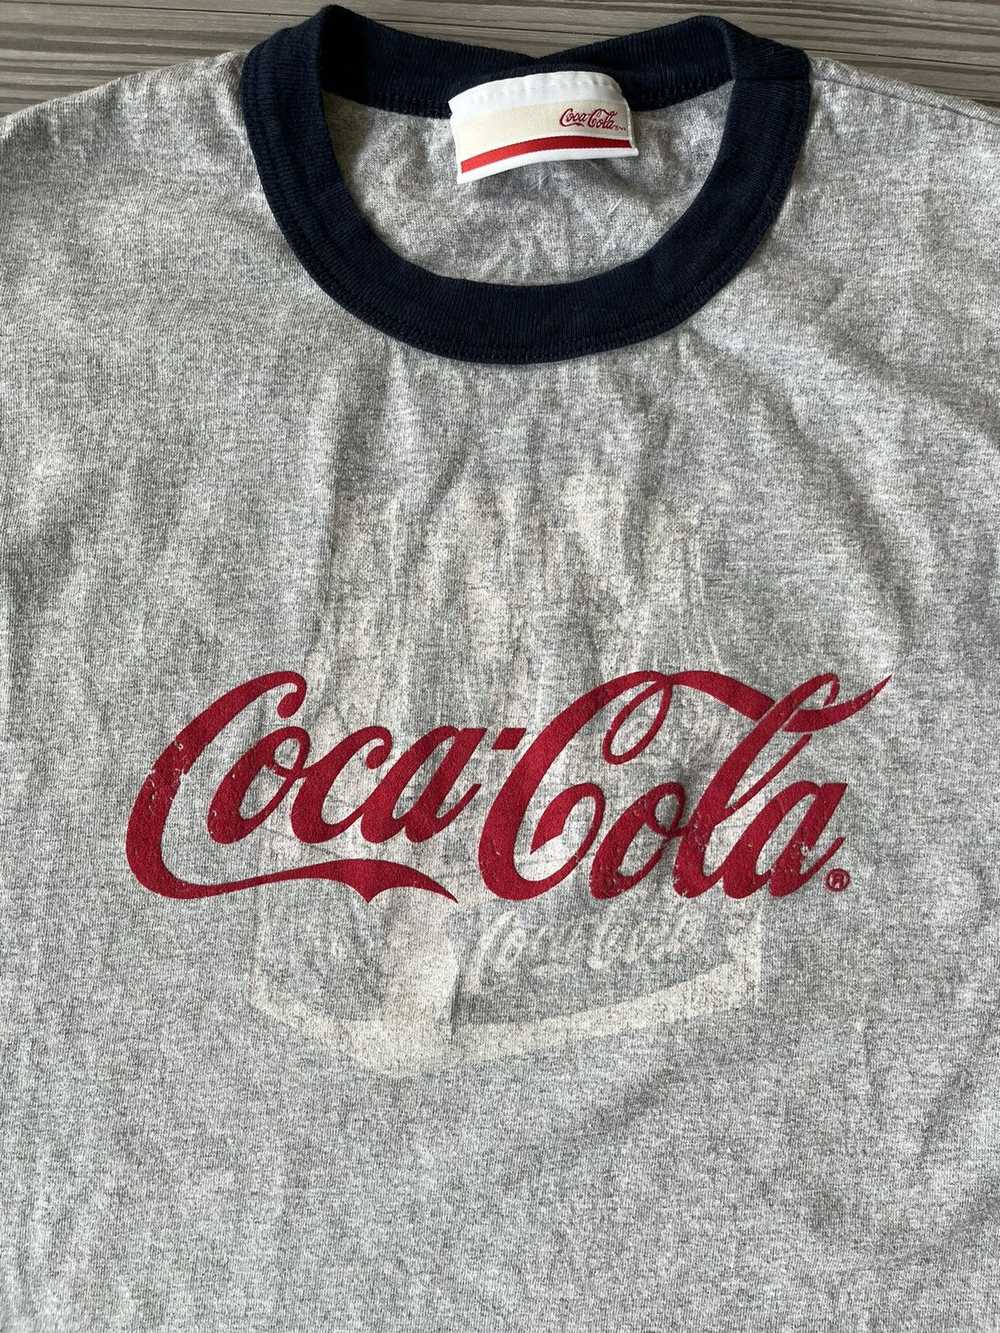 Coca Cola × Pepsi × Vintage Y2K Coca Cola shirt - image 2